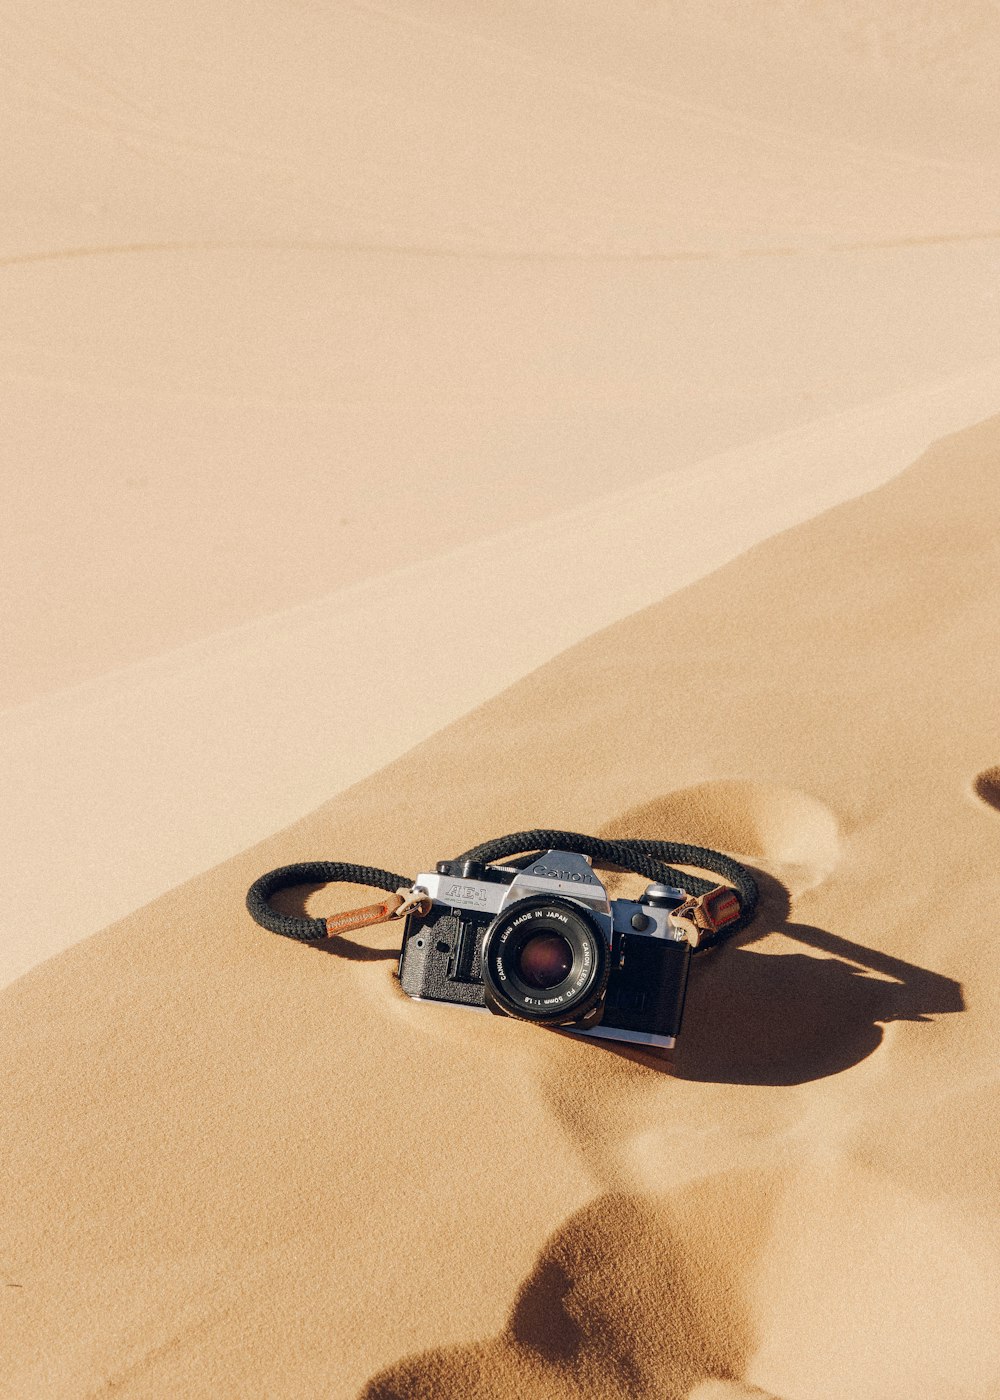 Schwarz-silberne DSLR-Kamera auf braunem Sand